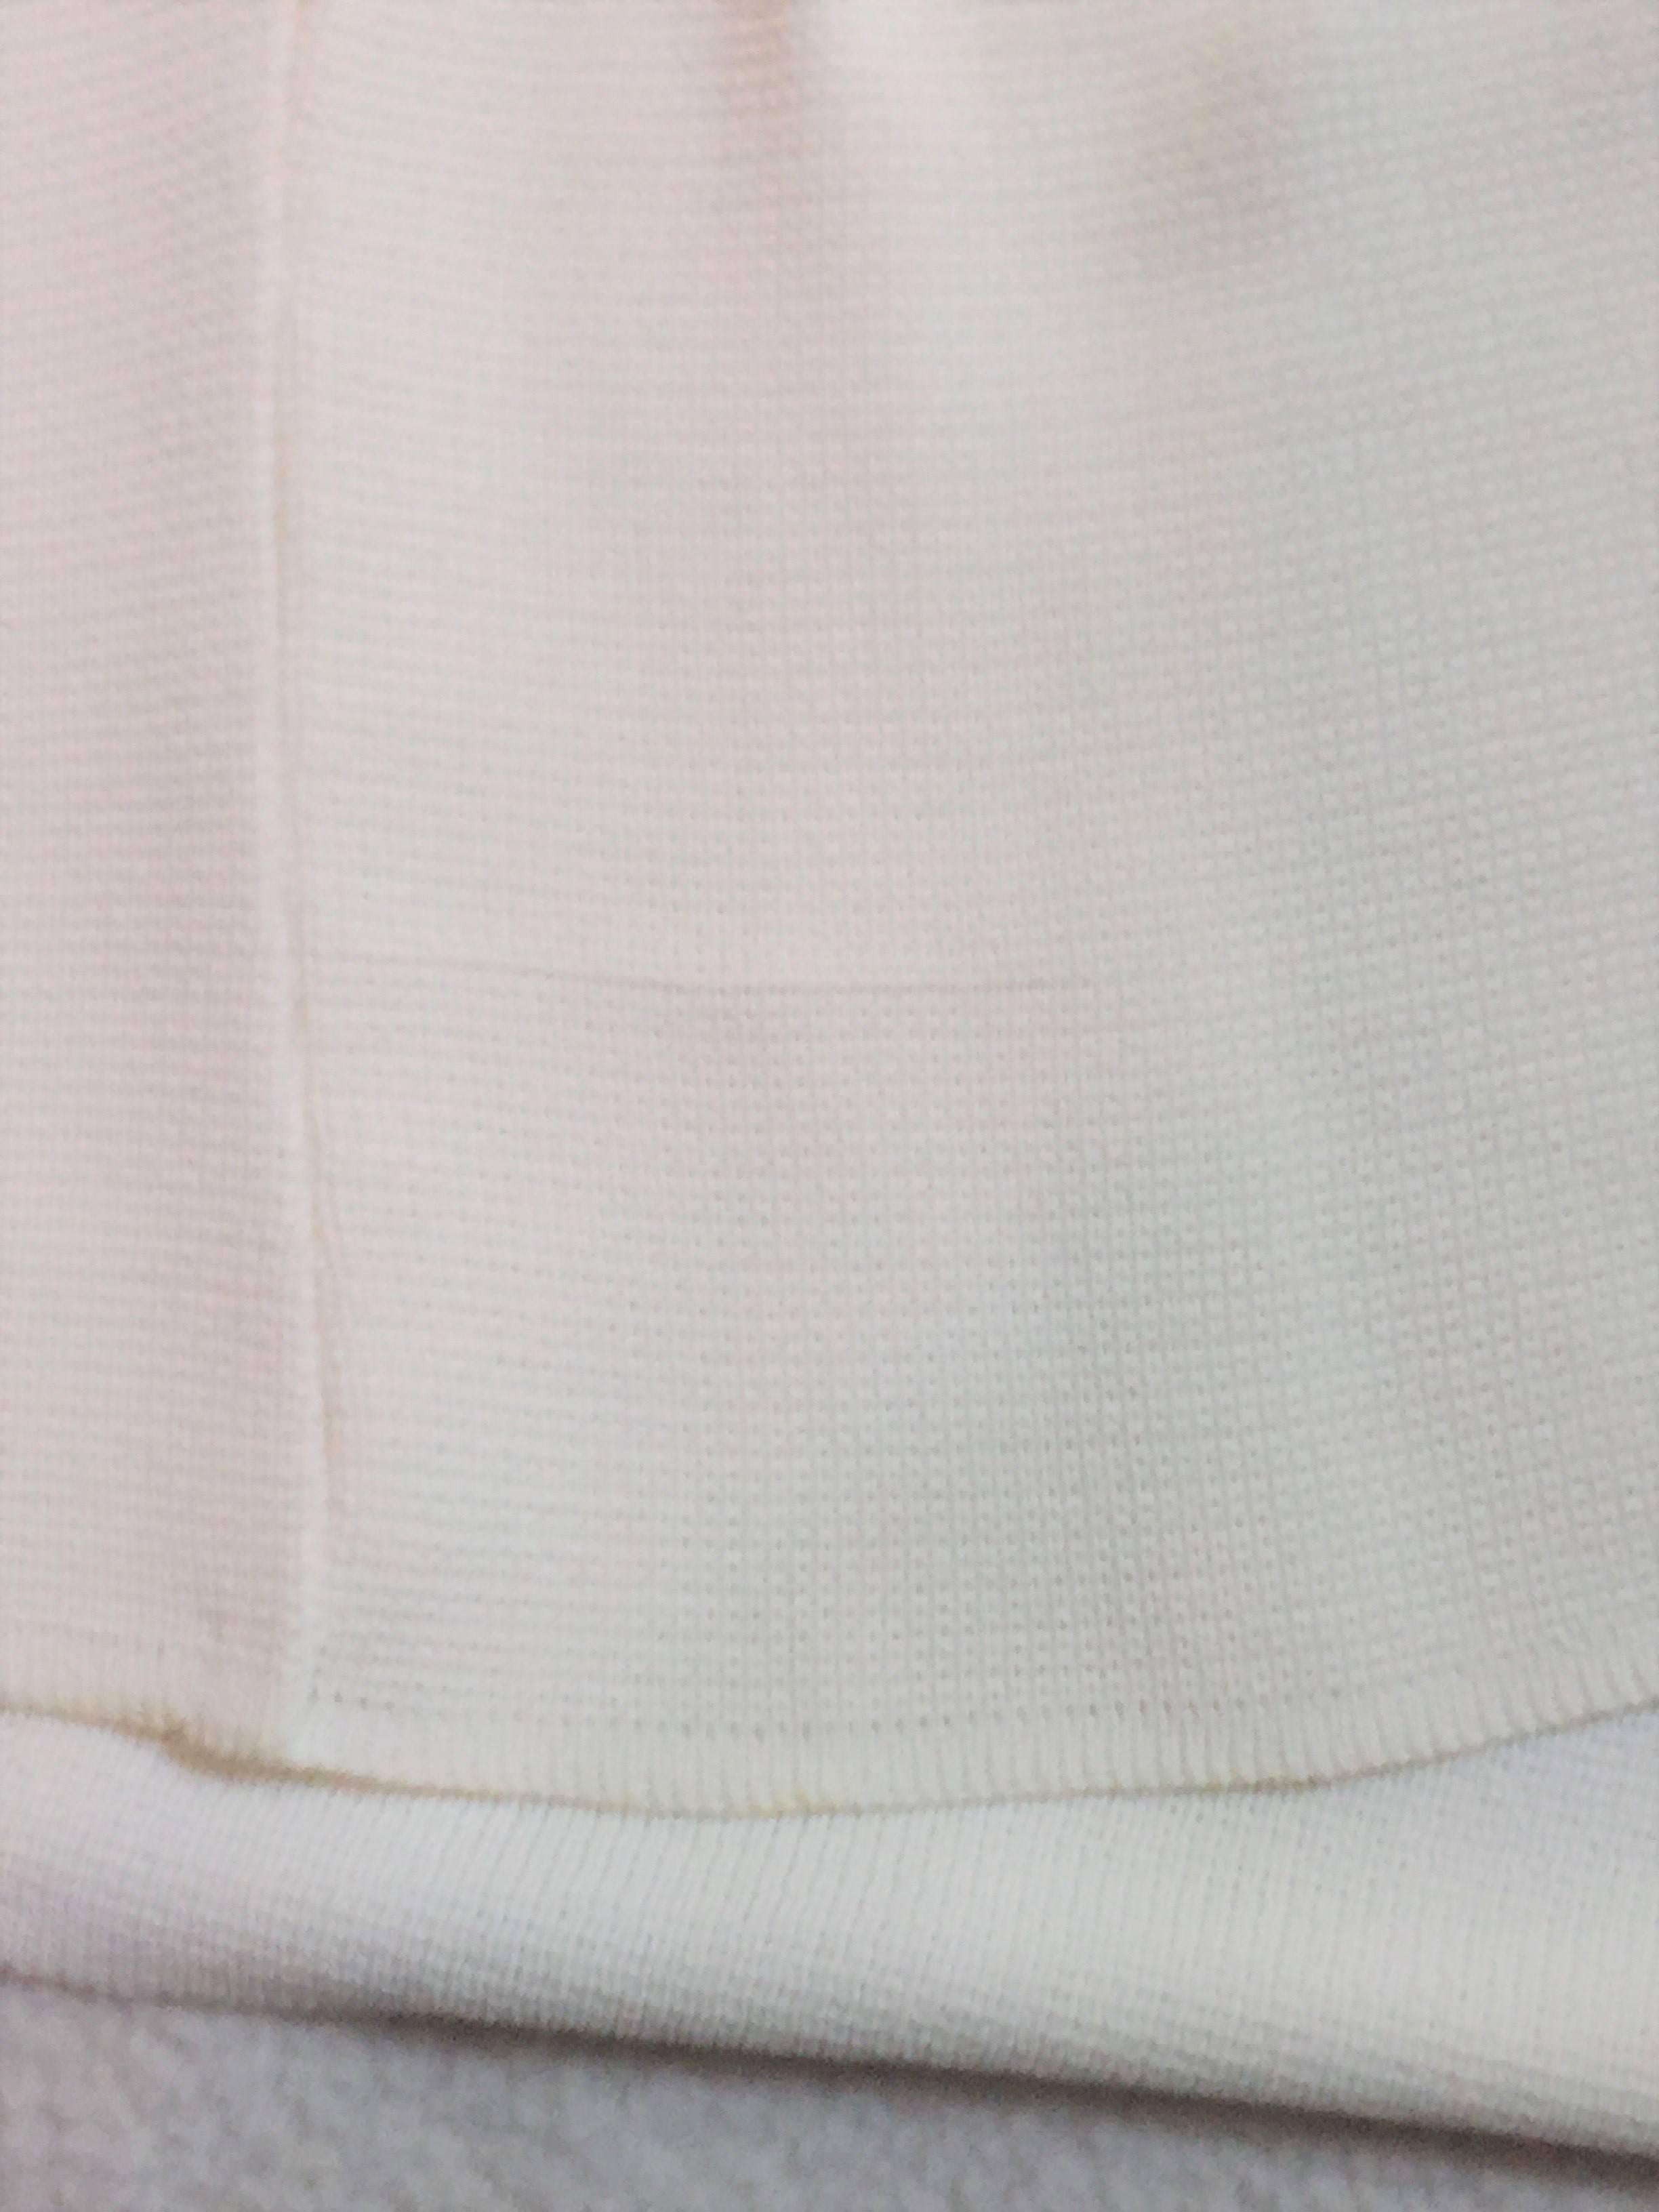 Women's S/S 1995 Dolce & Gabbana Sheer White Knit High Waist Pants & Crop Top Jumpsuit